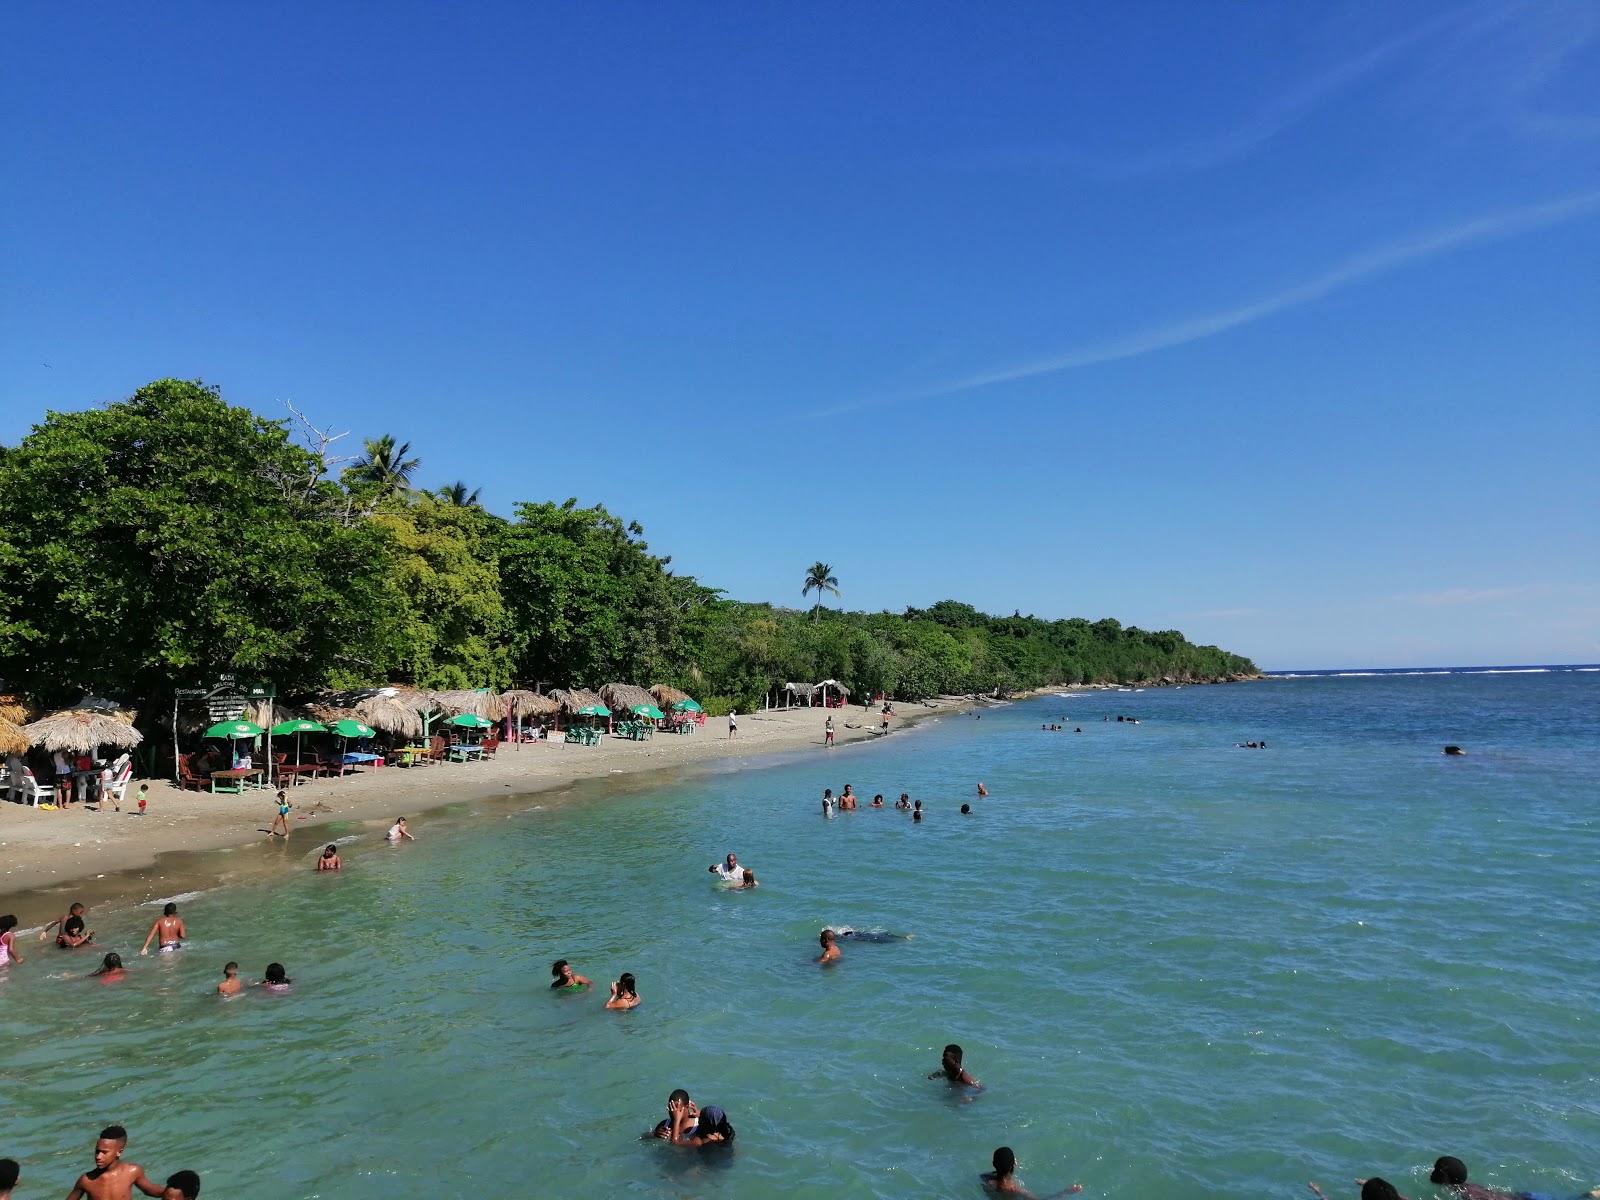 Palenque beach'in fotoğrafı gri kum yüzey ile